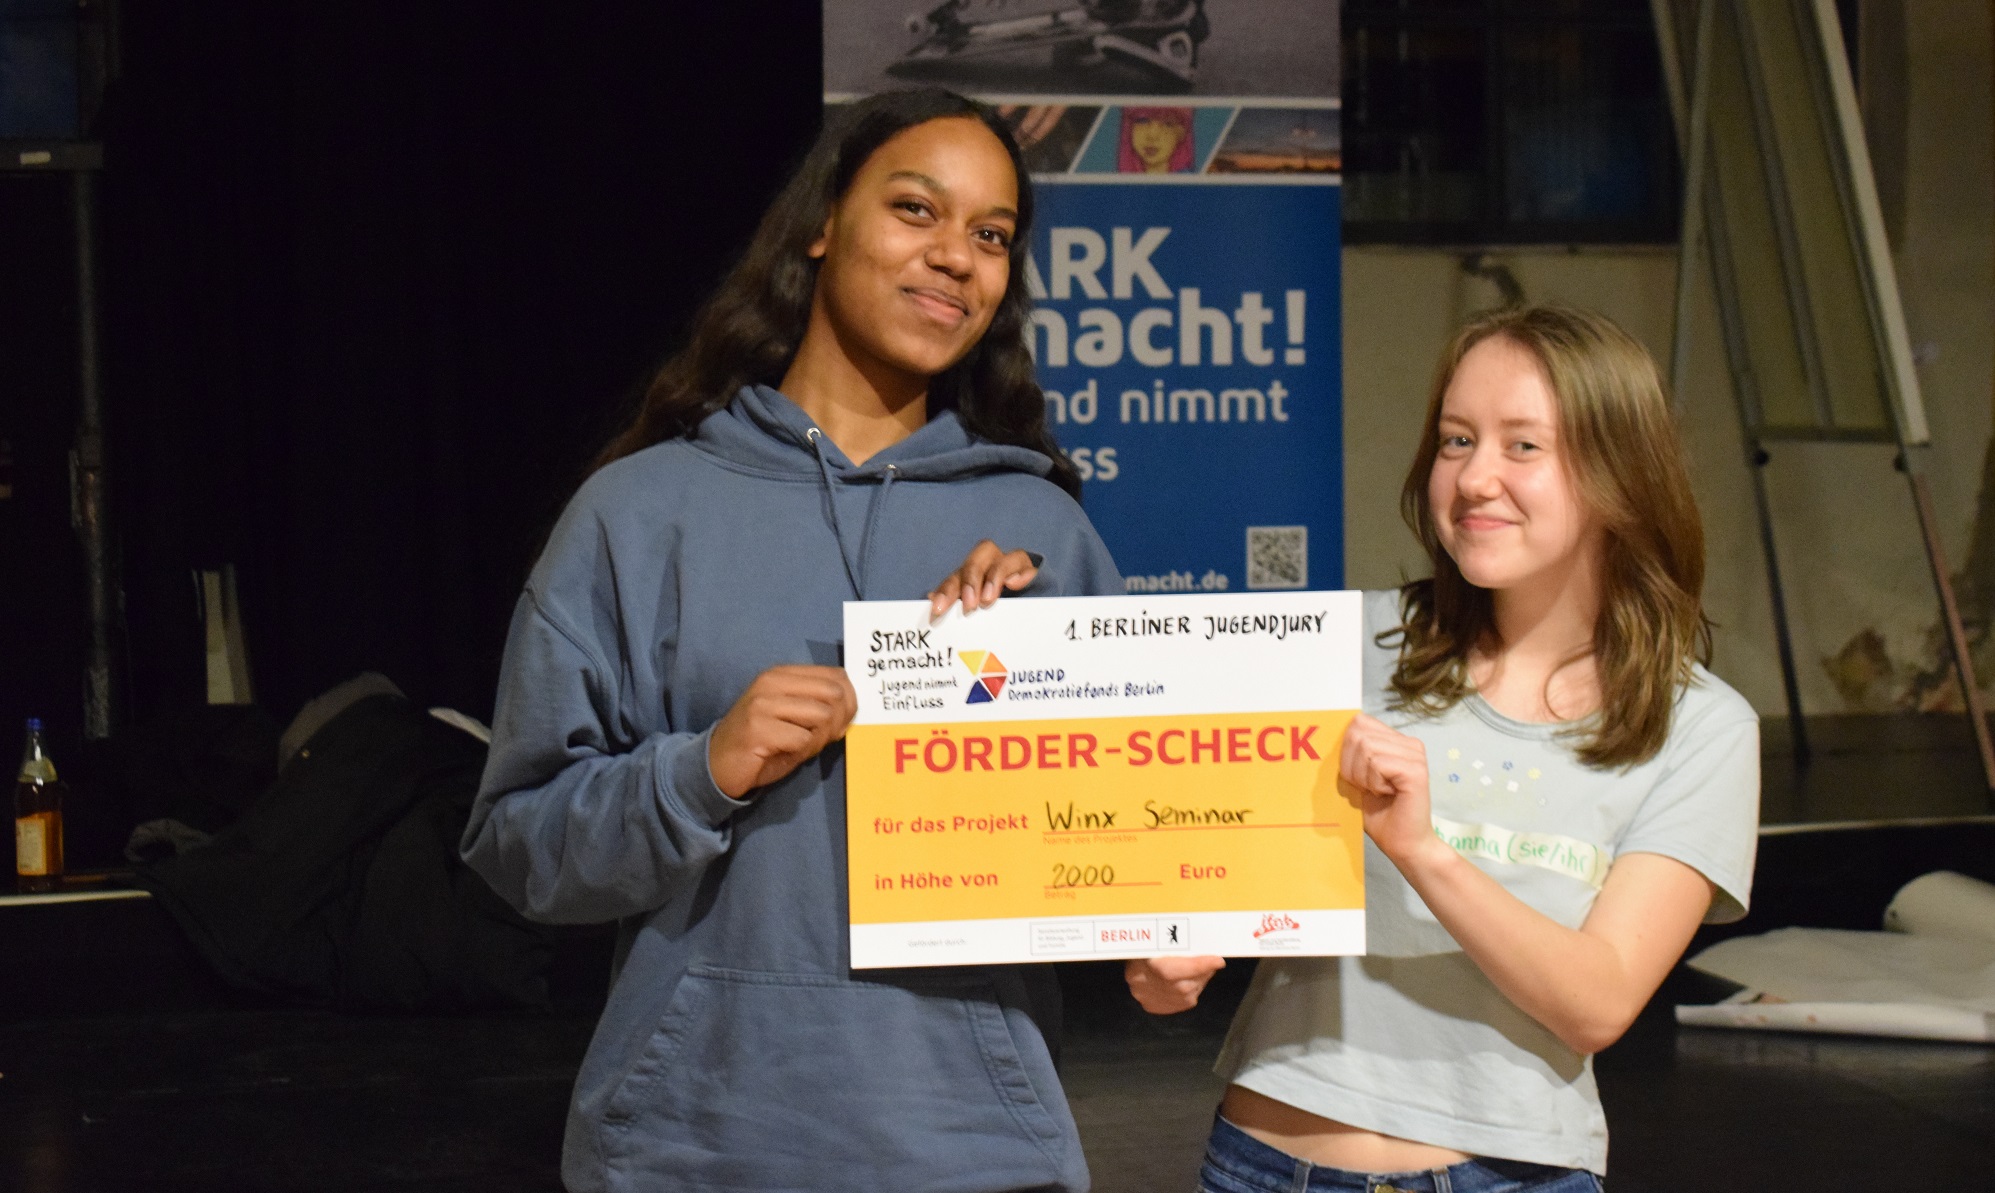 Zwei junge Menschen halten den Check für das Projekt "Winx Seminar" in den Händen